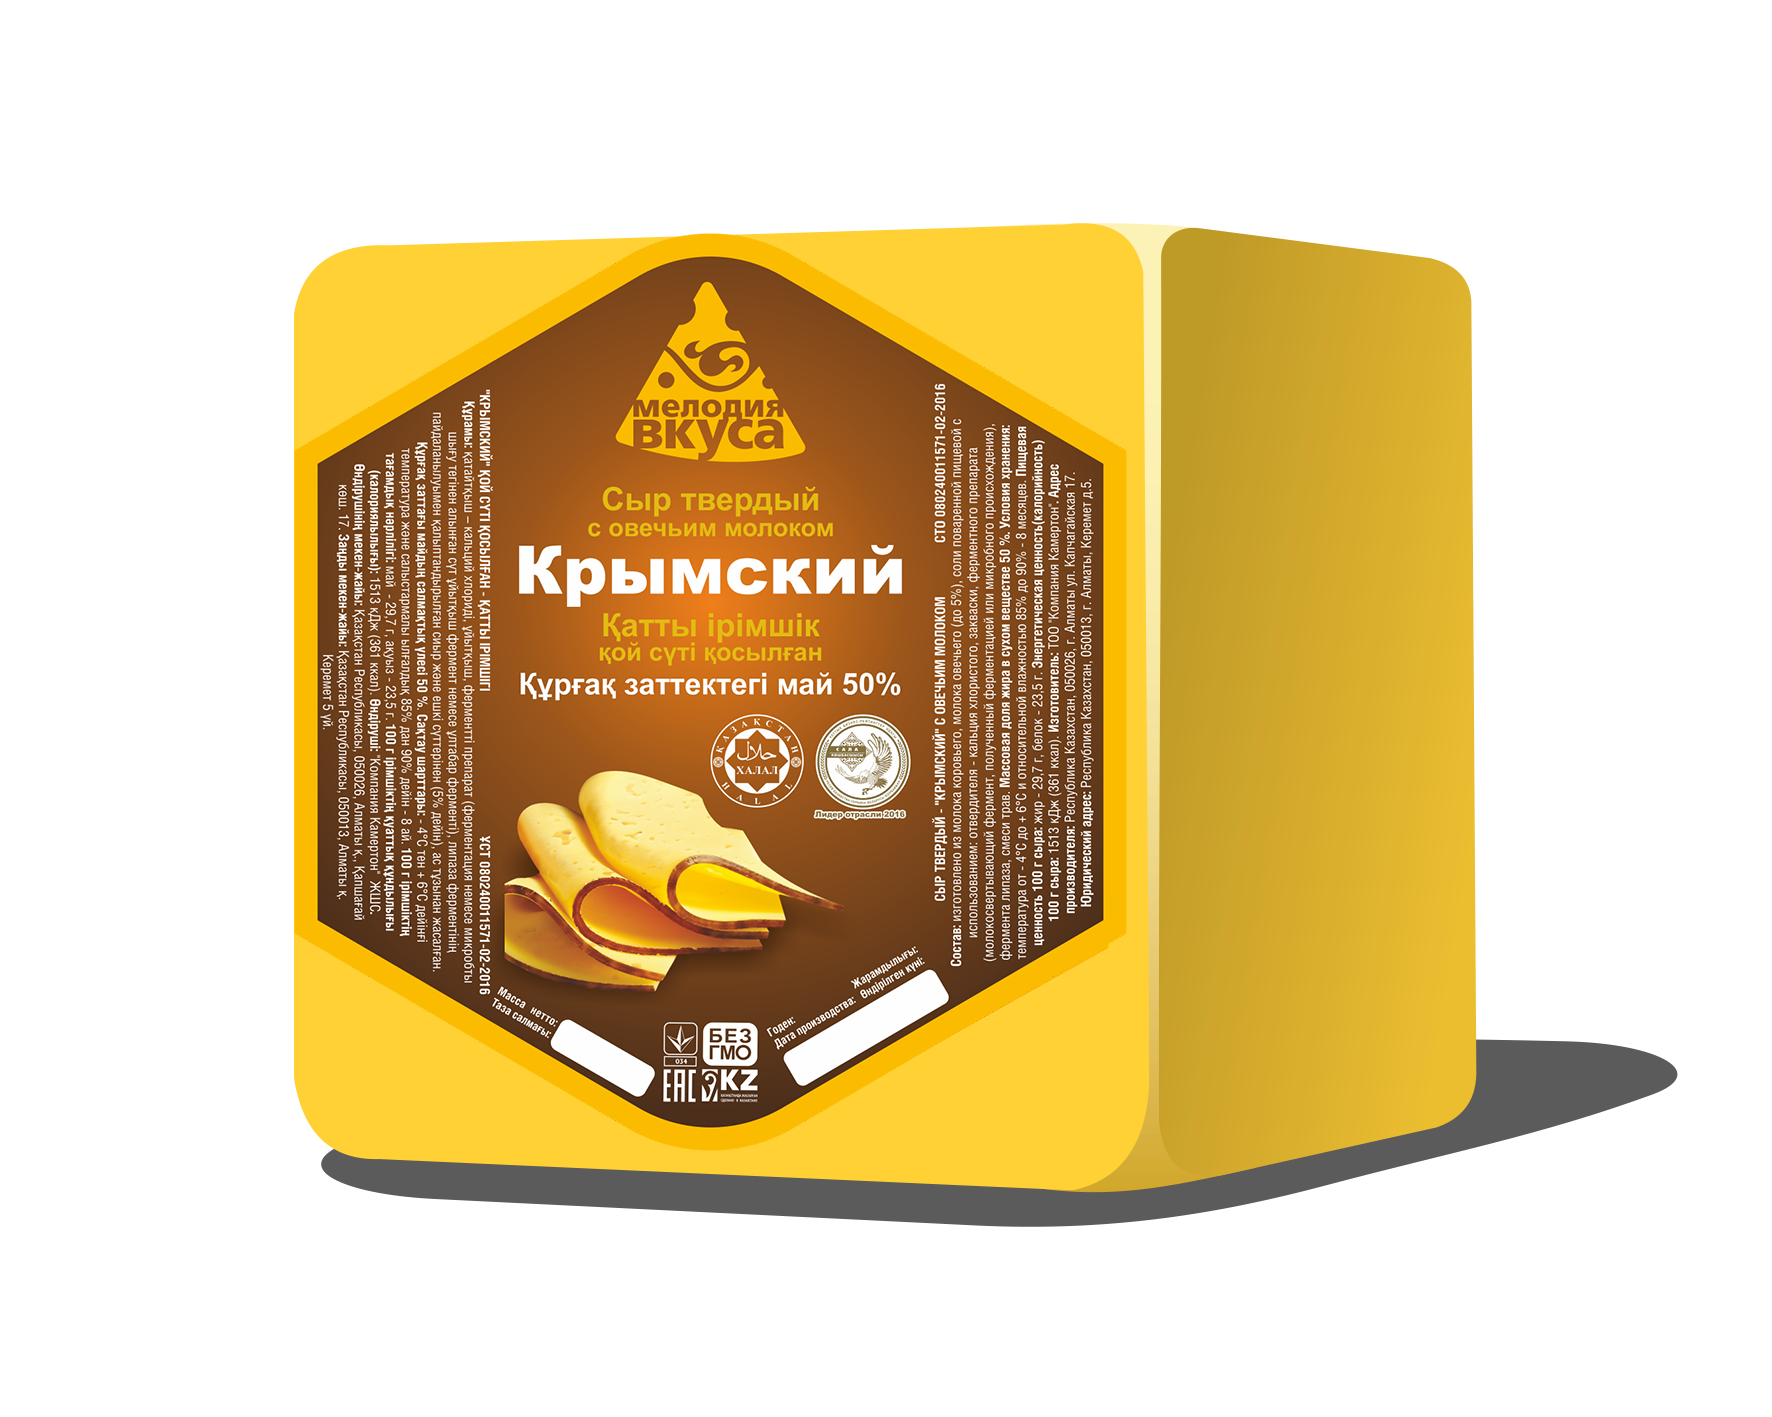 Крымский с овечьим молоком 50% ~2,5 кг. сыр твёрдый ТМ Мелодия вкуса, вес. /кор.6 шт.